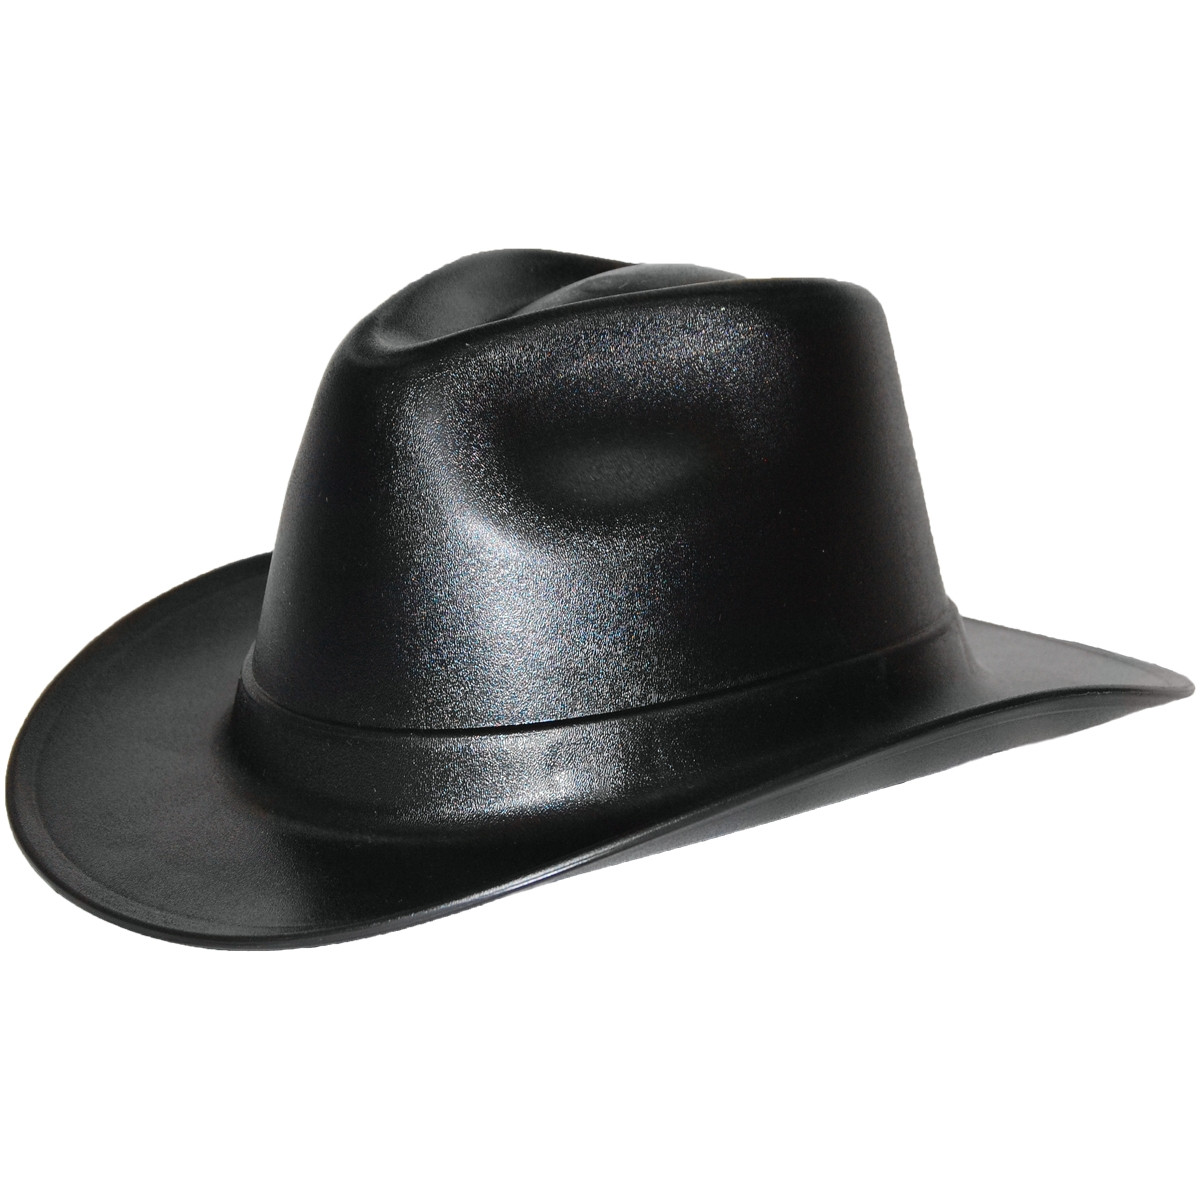 Жесткая шляпа. Vulka vcb100-00 hard hat строительная. Ковбойская каска строительная. Vulcan Cowboy Style hard hat White. Голд диггер шляпа.